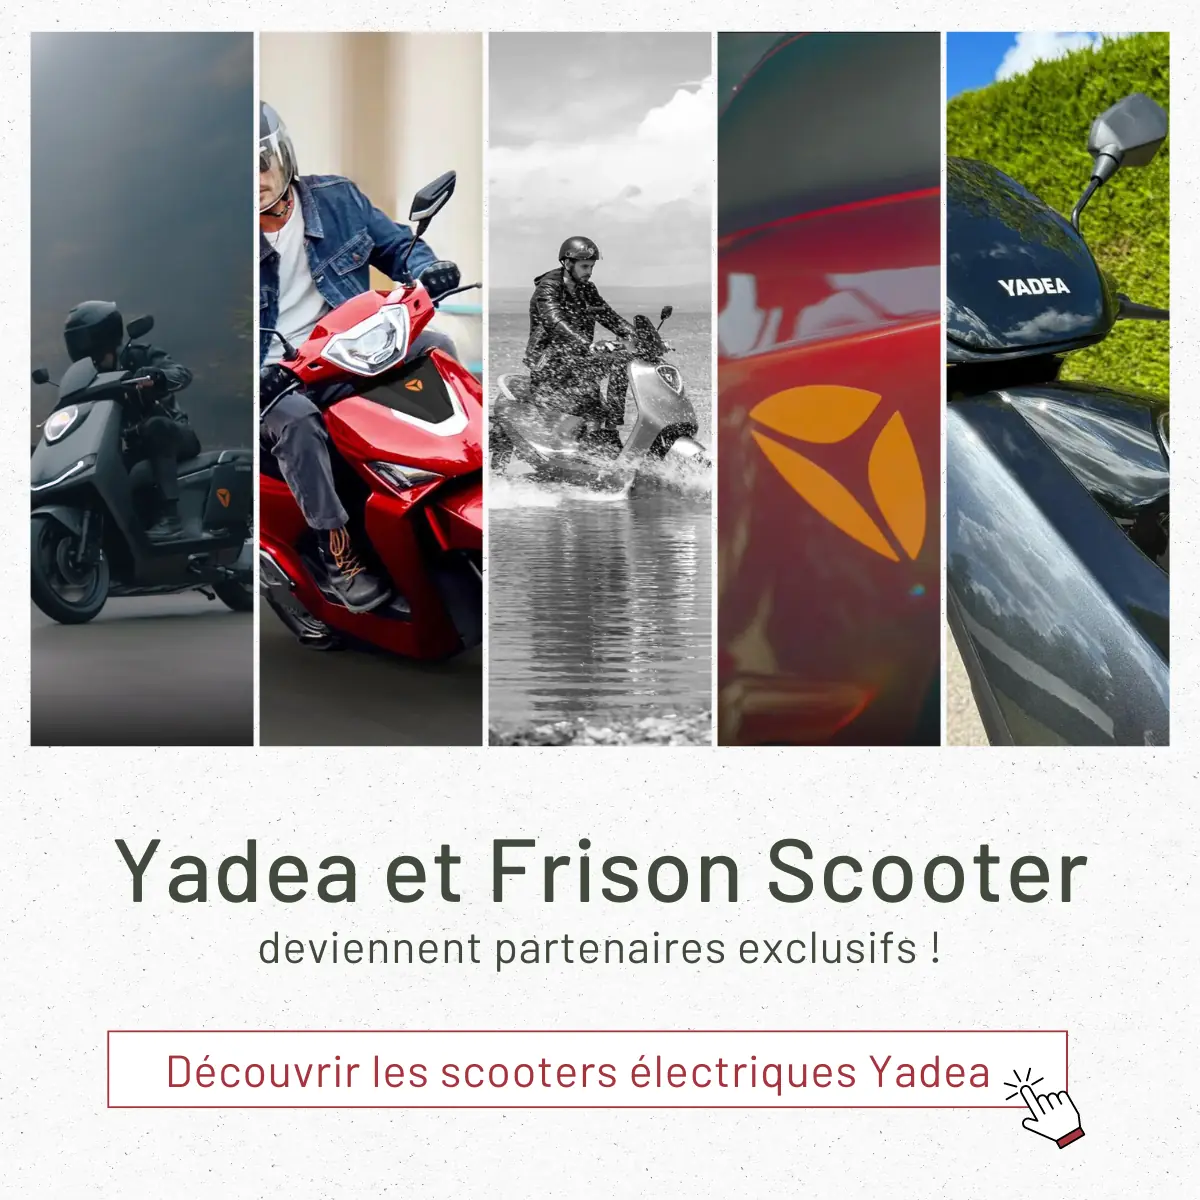 Cinq scooters électriques Yadea présentés de manière dynamique